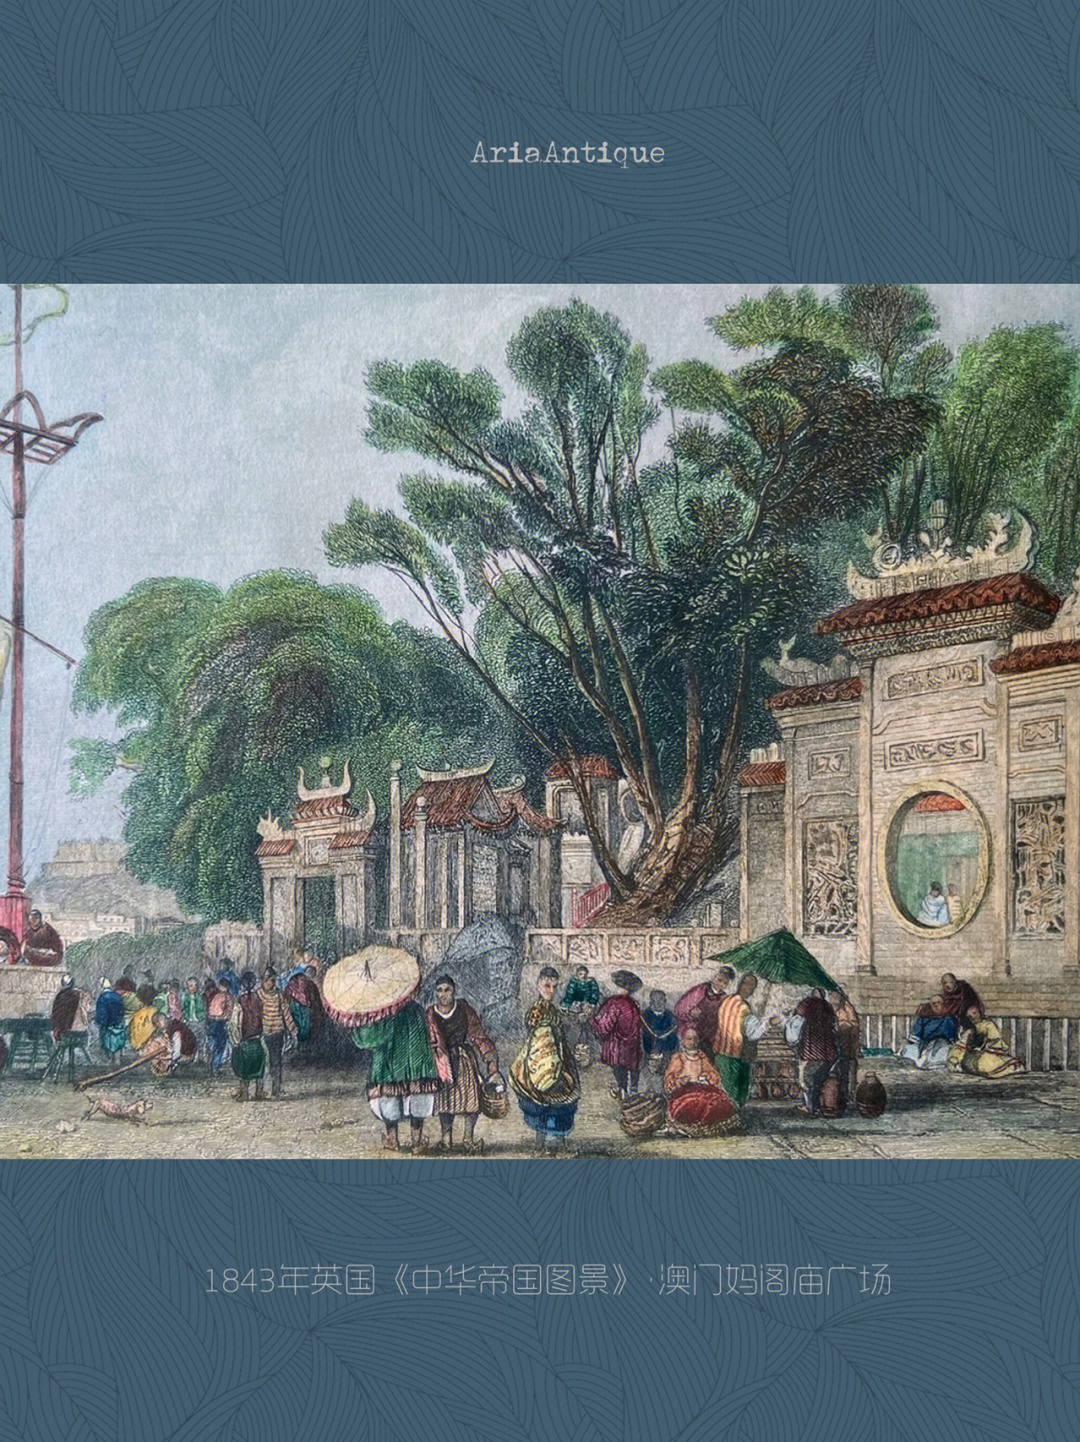 1843年英国《中华帝国图景》·澳门妈阁庙广场